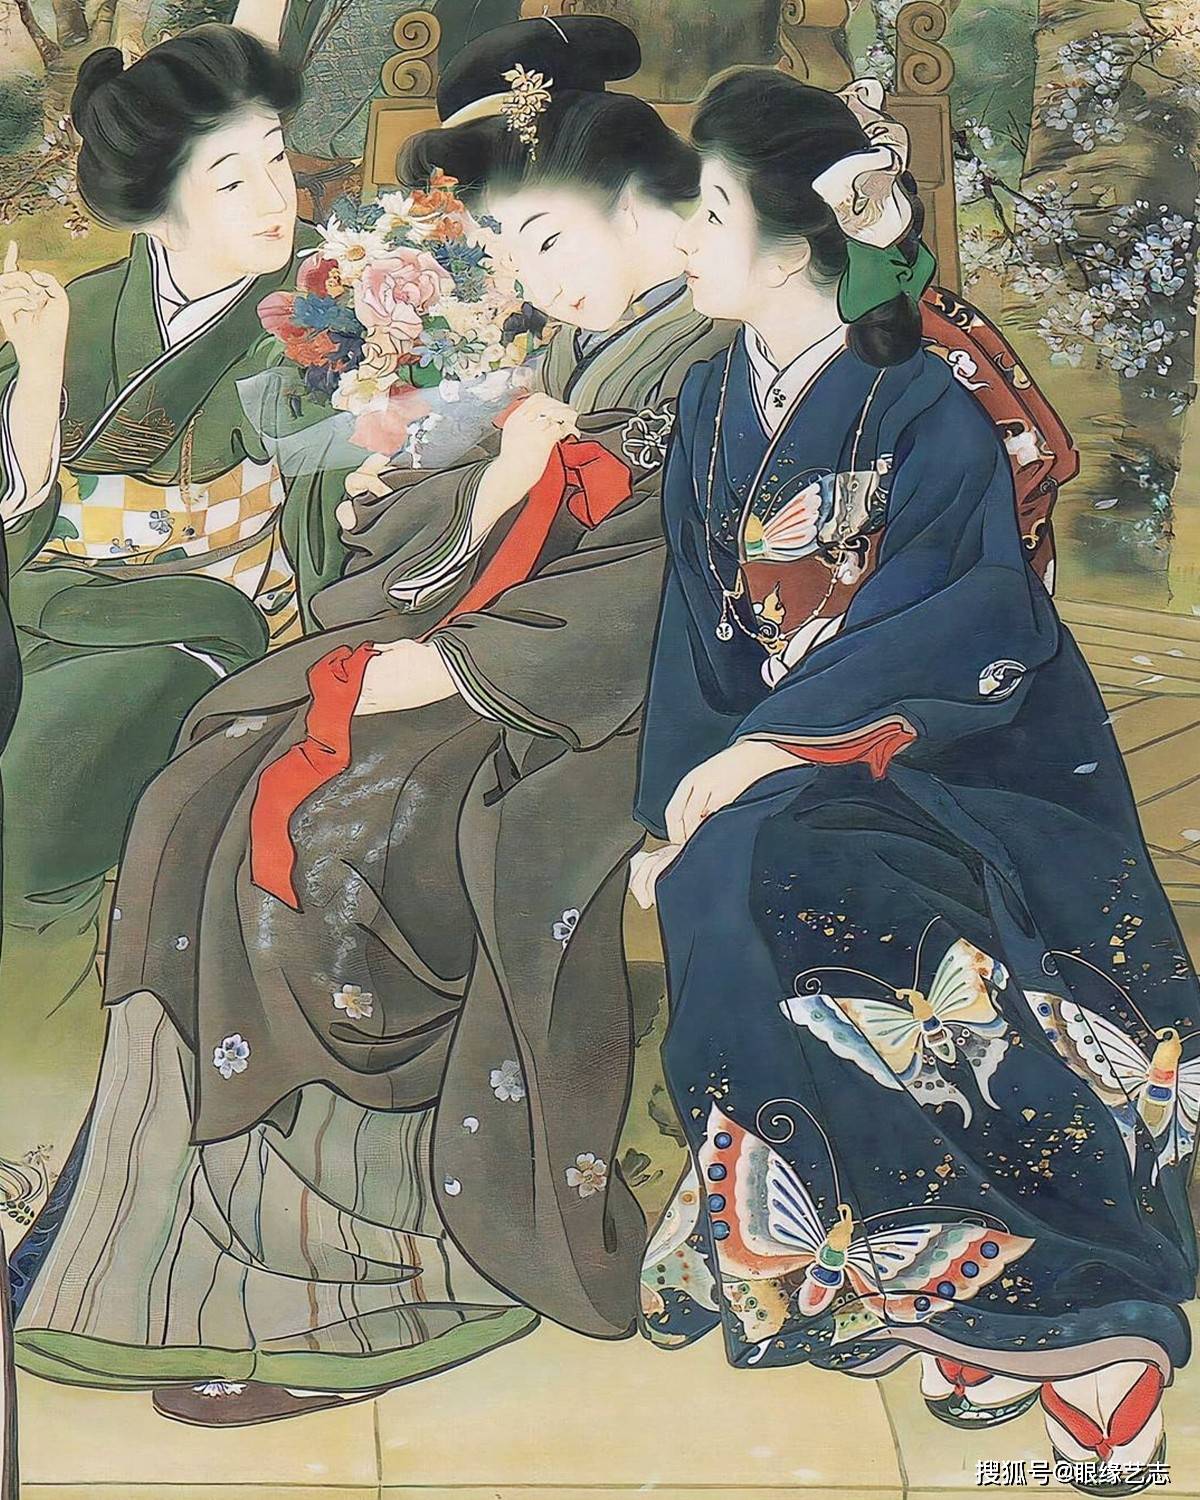 原创日本传统绘画精赏:梅唇,秋园,新娘,伊香